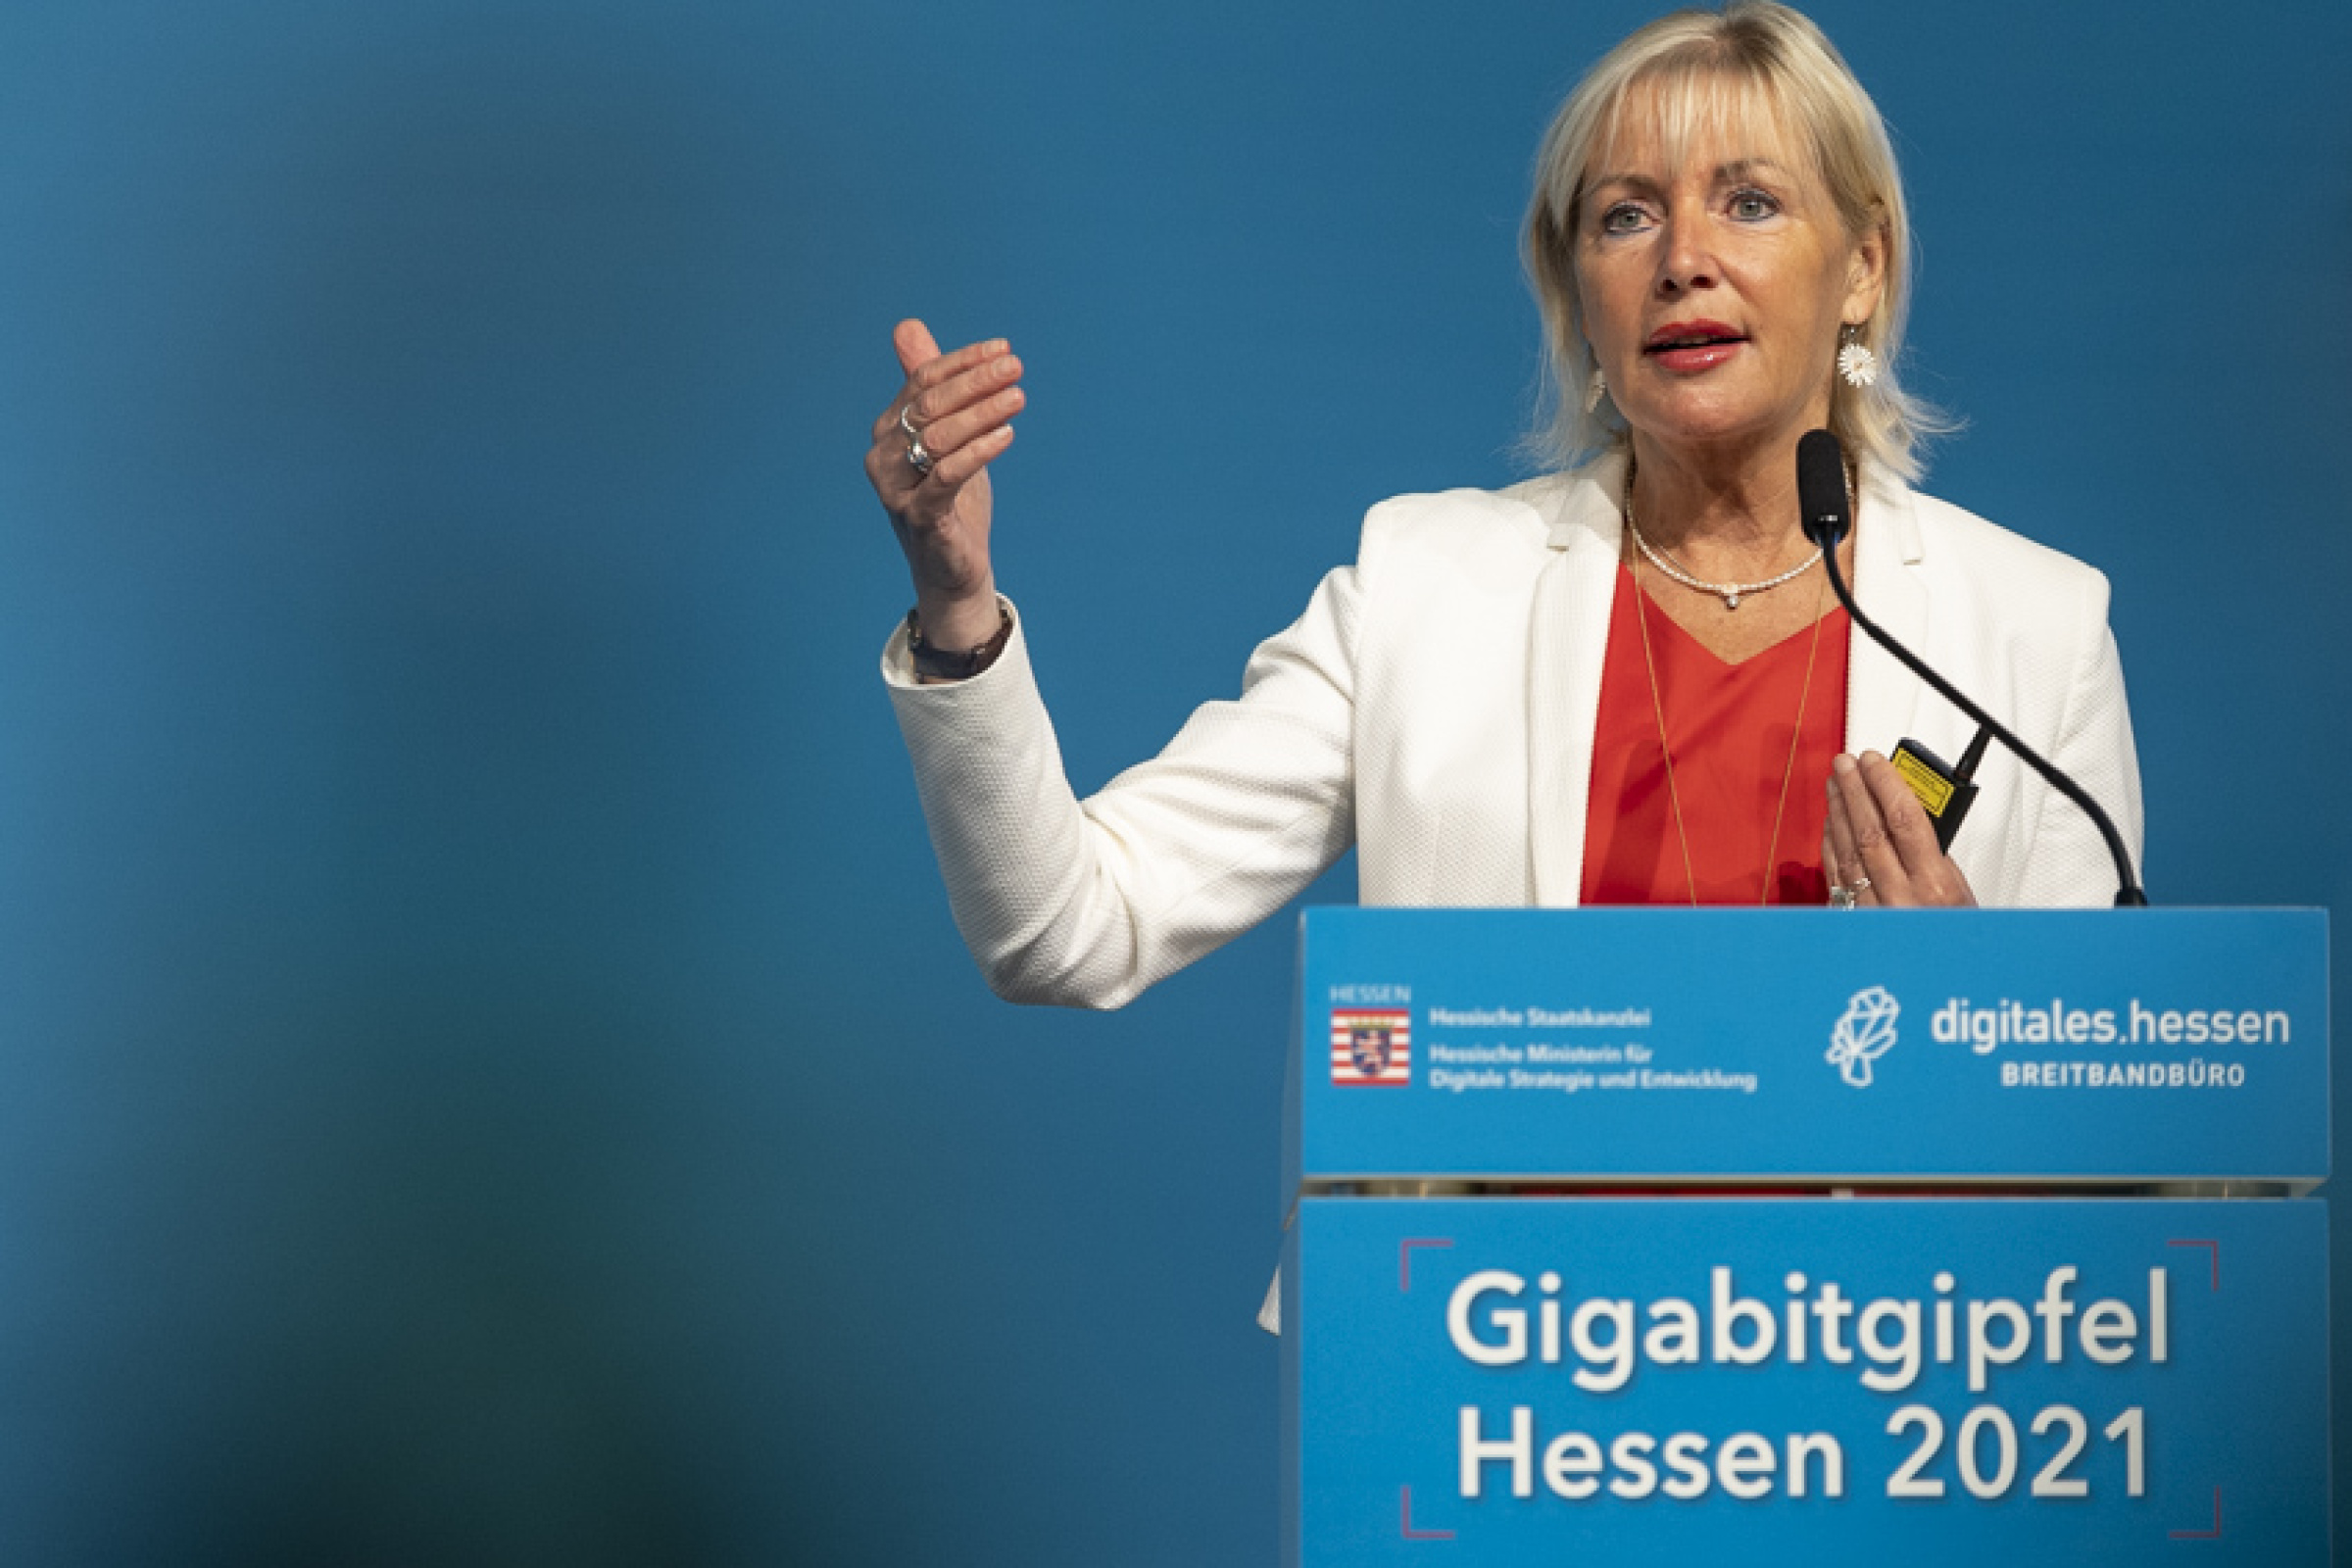 Die Hessische Digitalministerin Prof. Dr. Kristina Sinemus bei der Eröffnung des Gigabitgipfels Hessen 2021